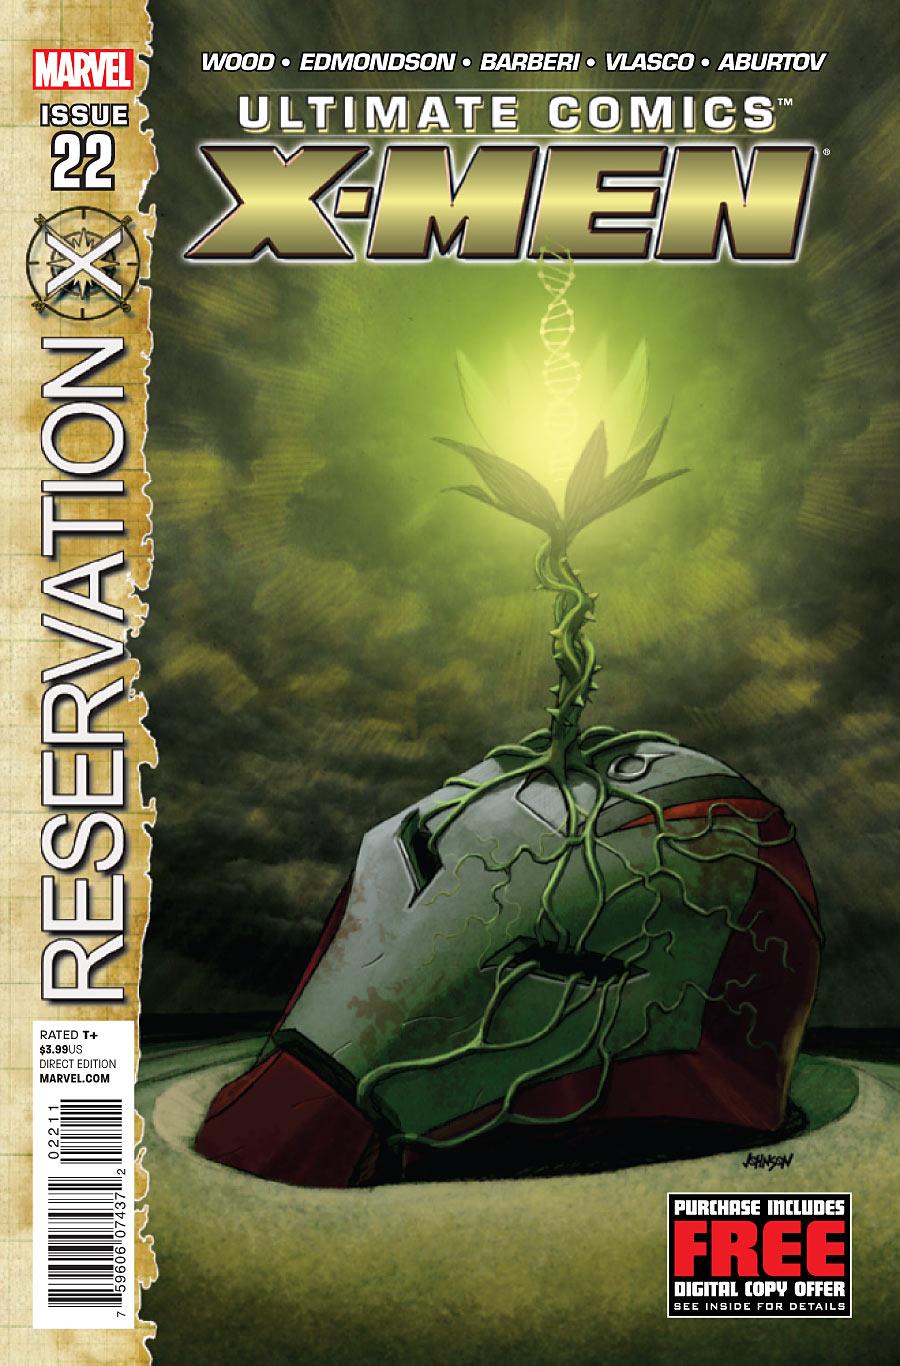 Ultimate Comics X-Men Vol. 1 #22